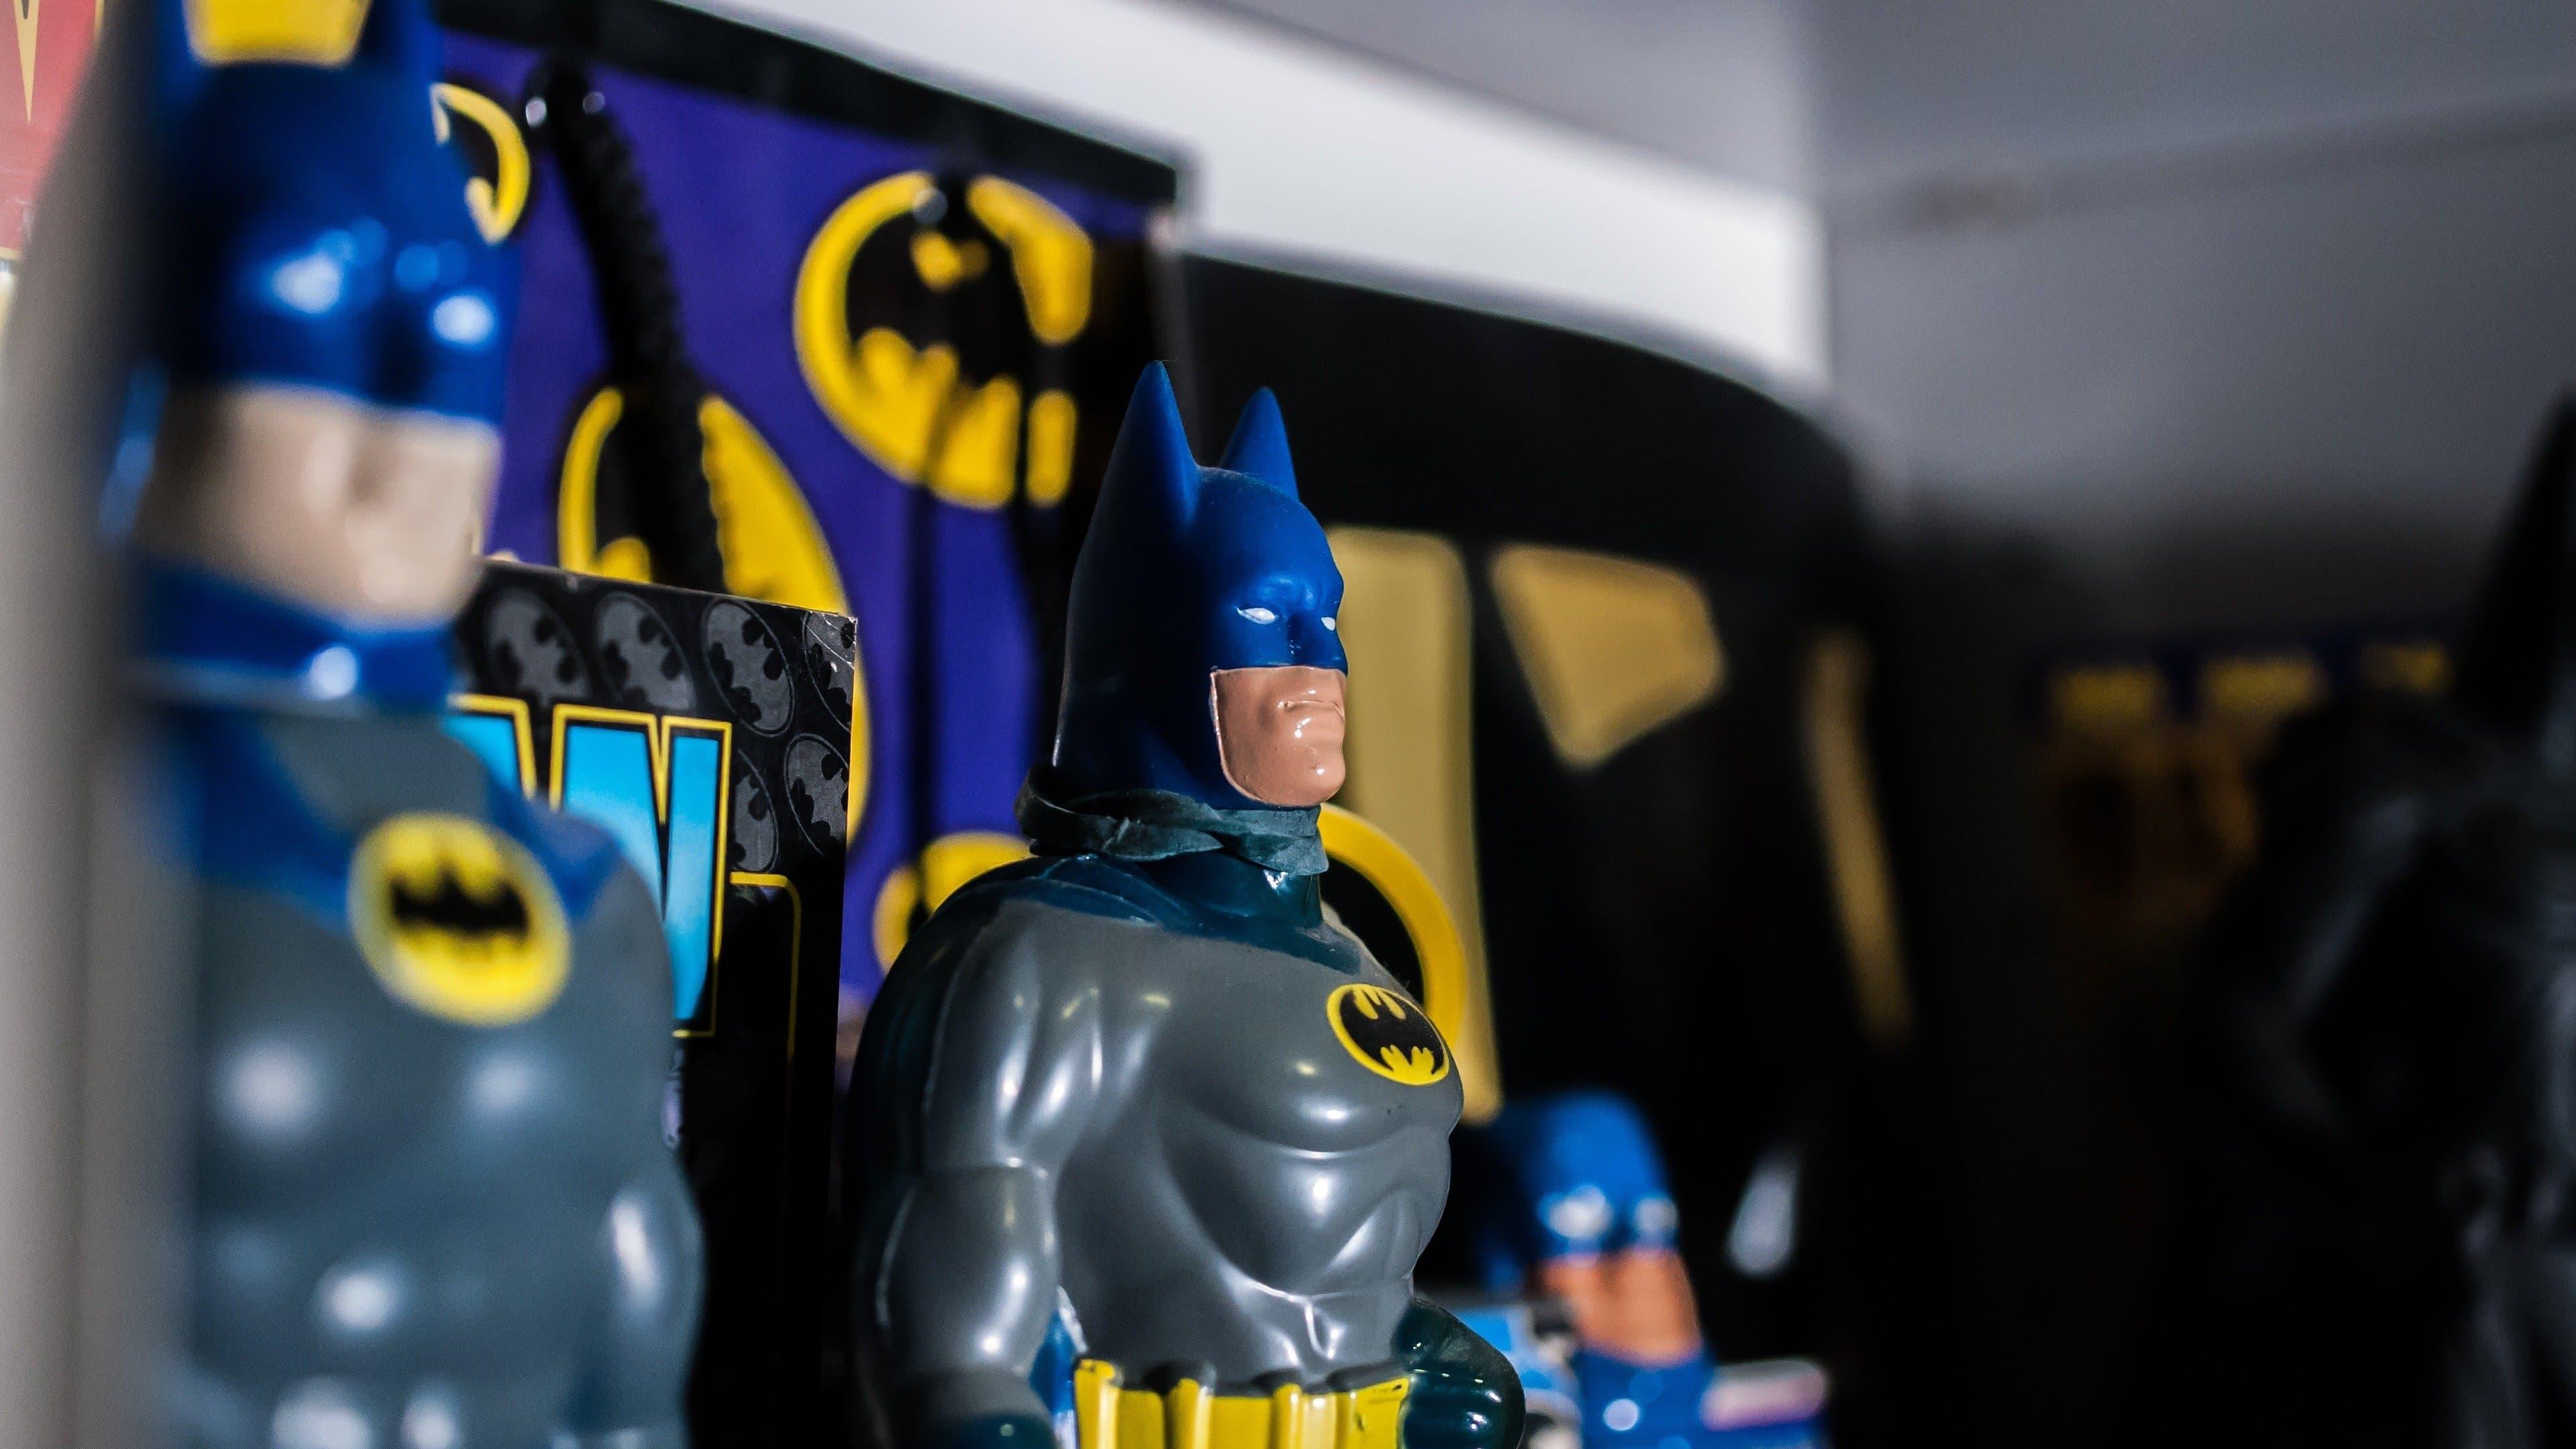 Batman and Me backdrop